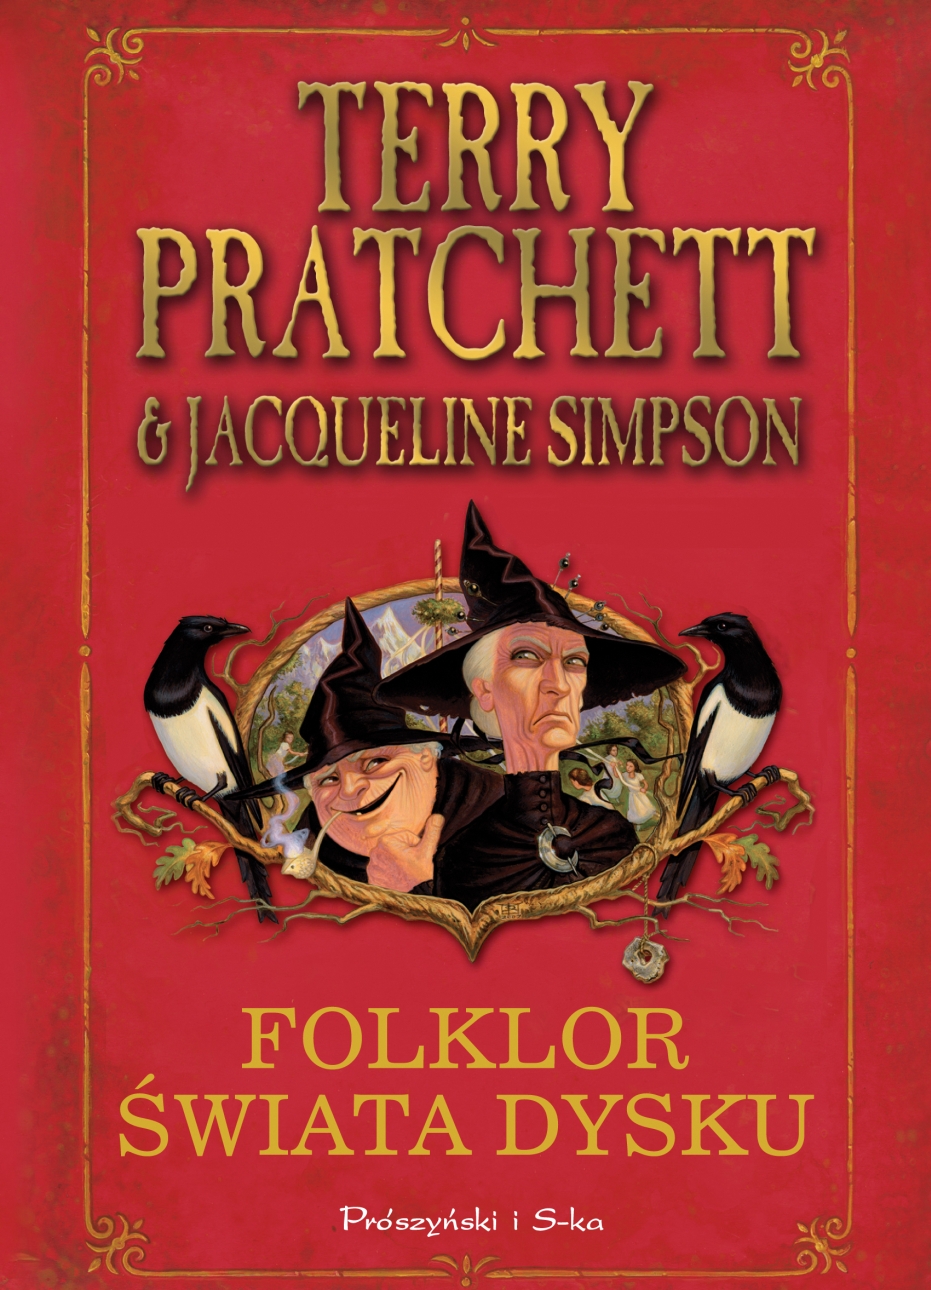 Terry Pratchett, Jacqueline Simpson, ?Folklor Świata Dysku? debiutuje w księgarniach